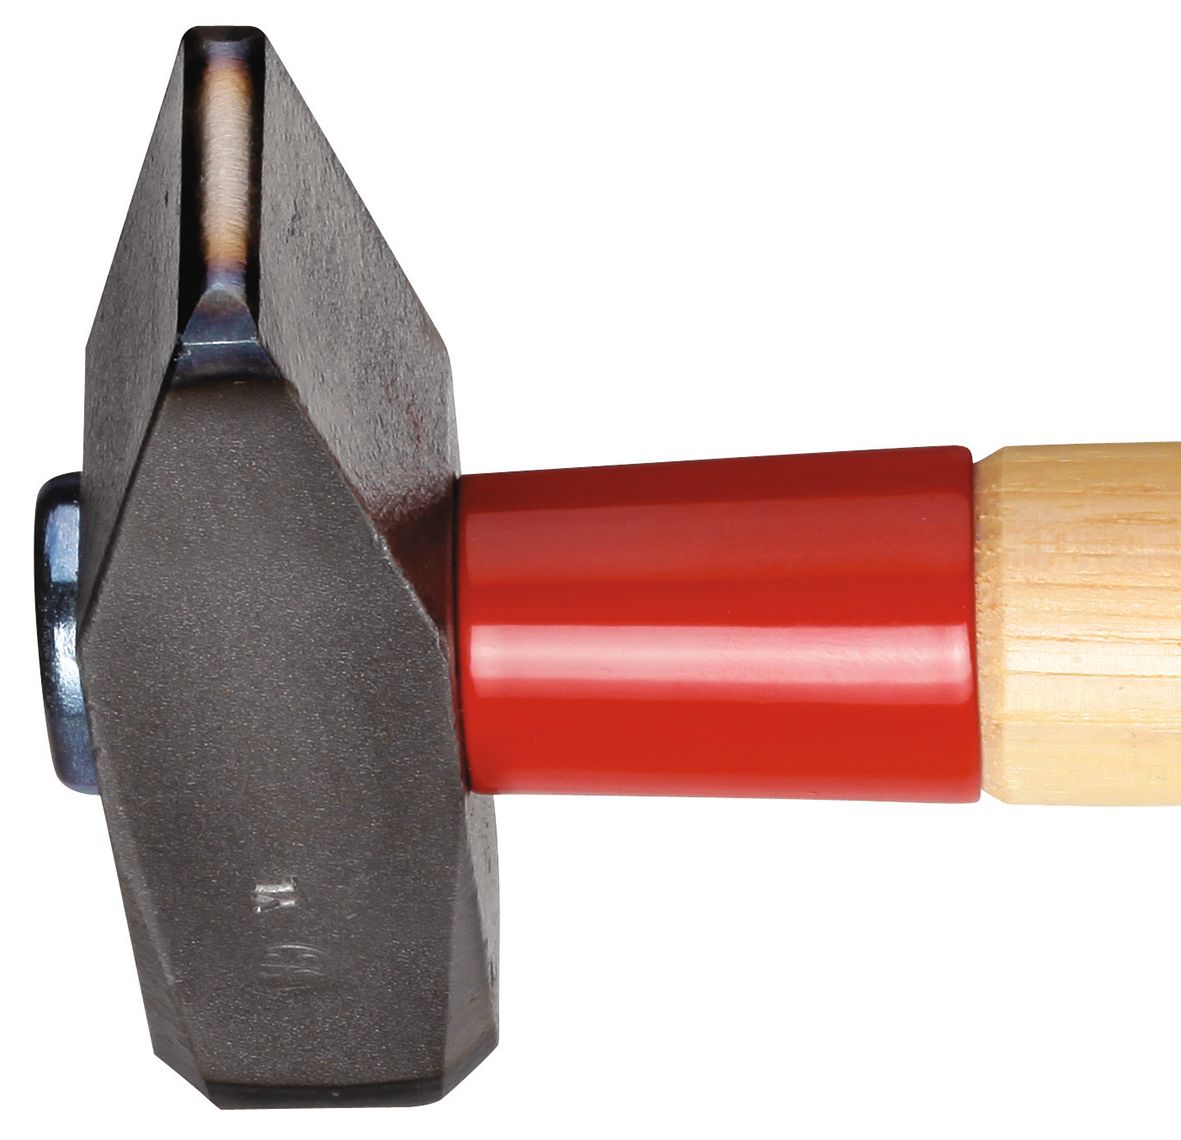 GEDORE 600 IH-1500 - ROTBAND-PLUS Hammer 1.5Kg (8587570)